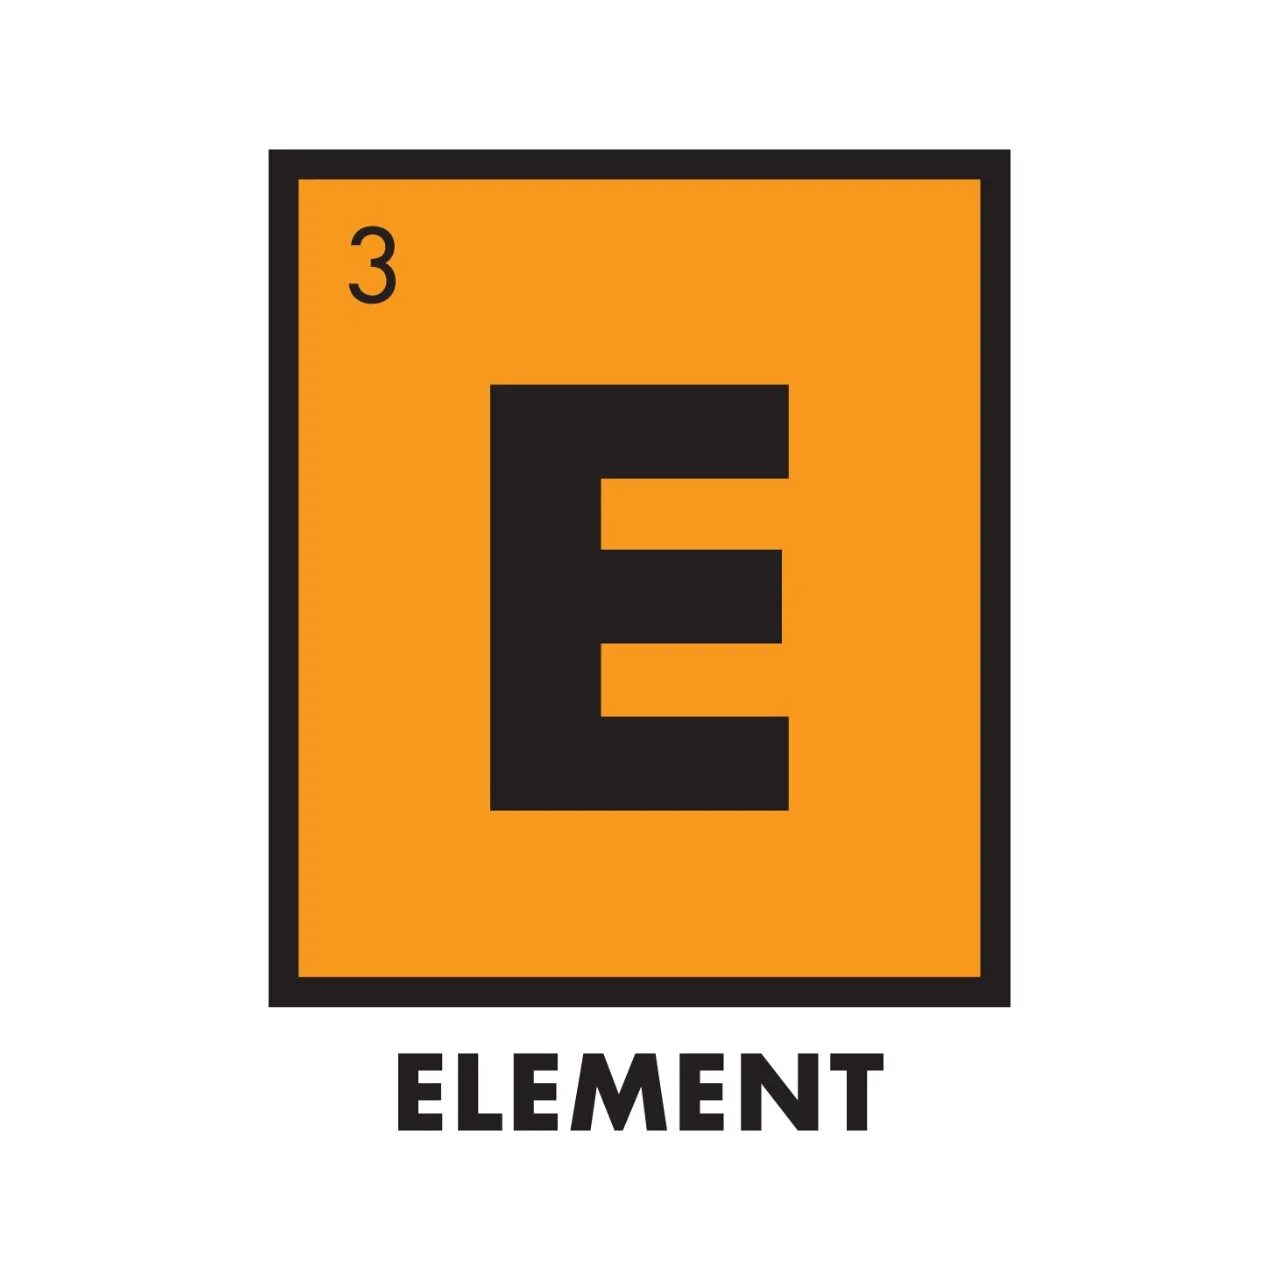 Elements nulled. Элементы для логотипа. Element логотип. TP элемент лого. Element табак лого.